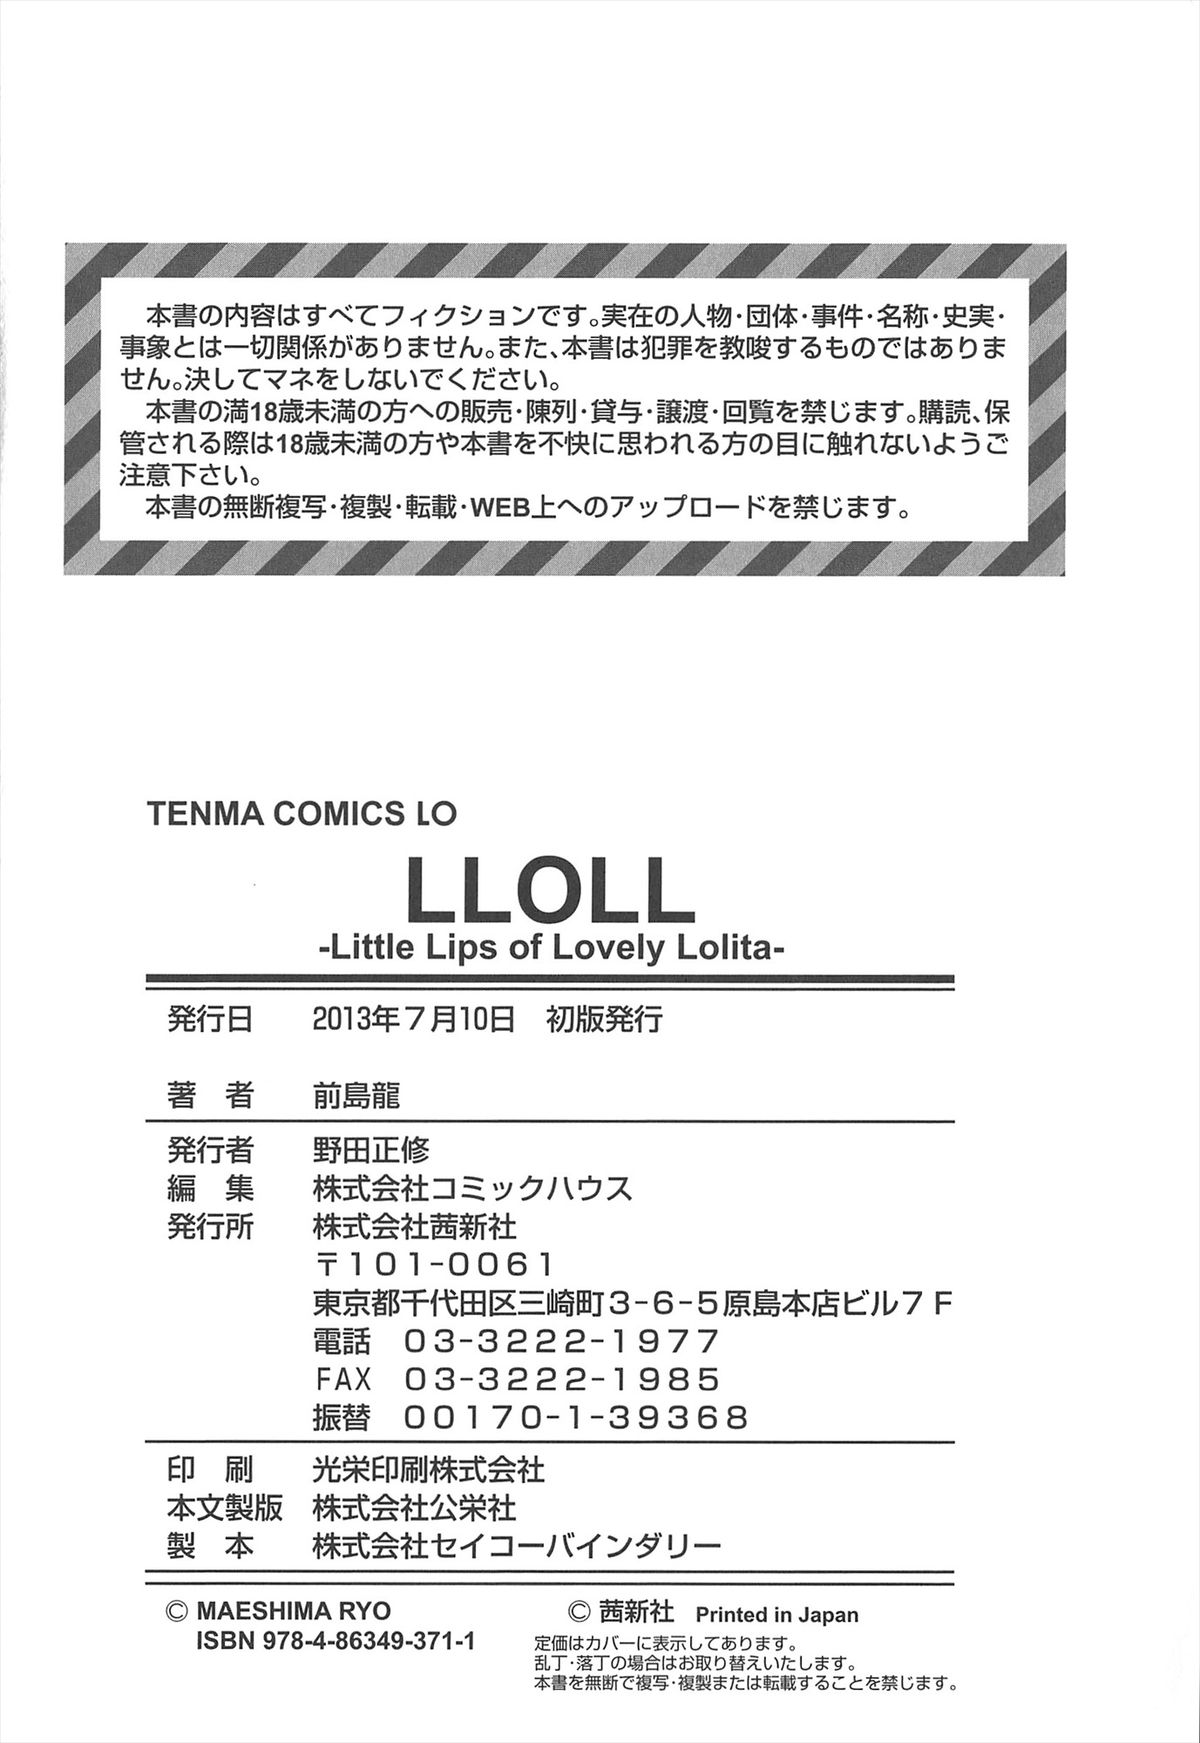 [前島龍] LLOLL -Little Lips of Lovely Lolita- メロンブックス特典付き